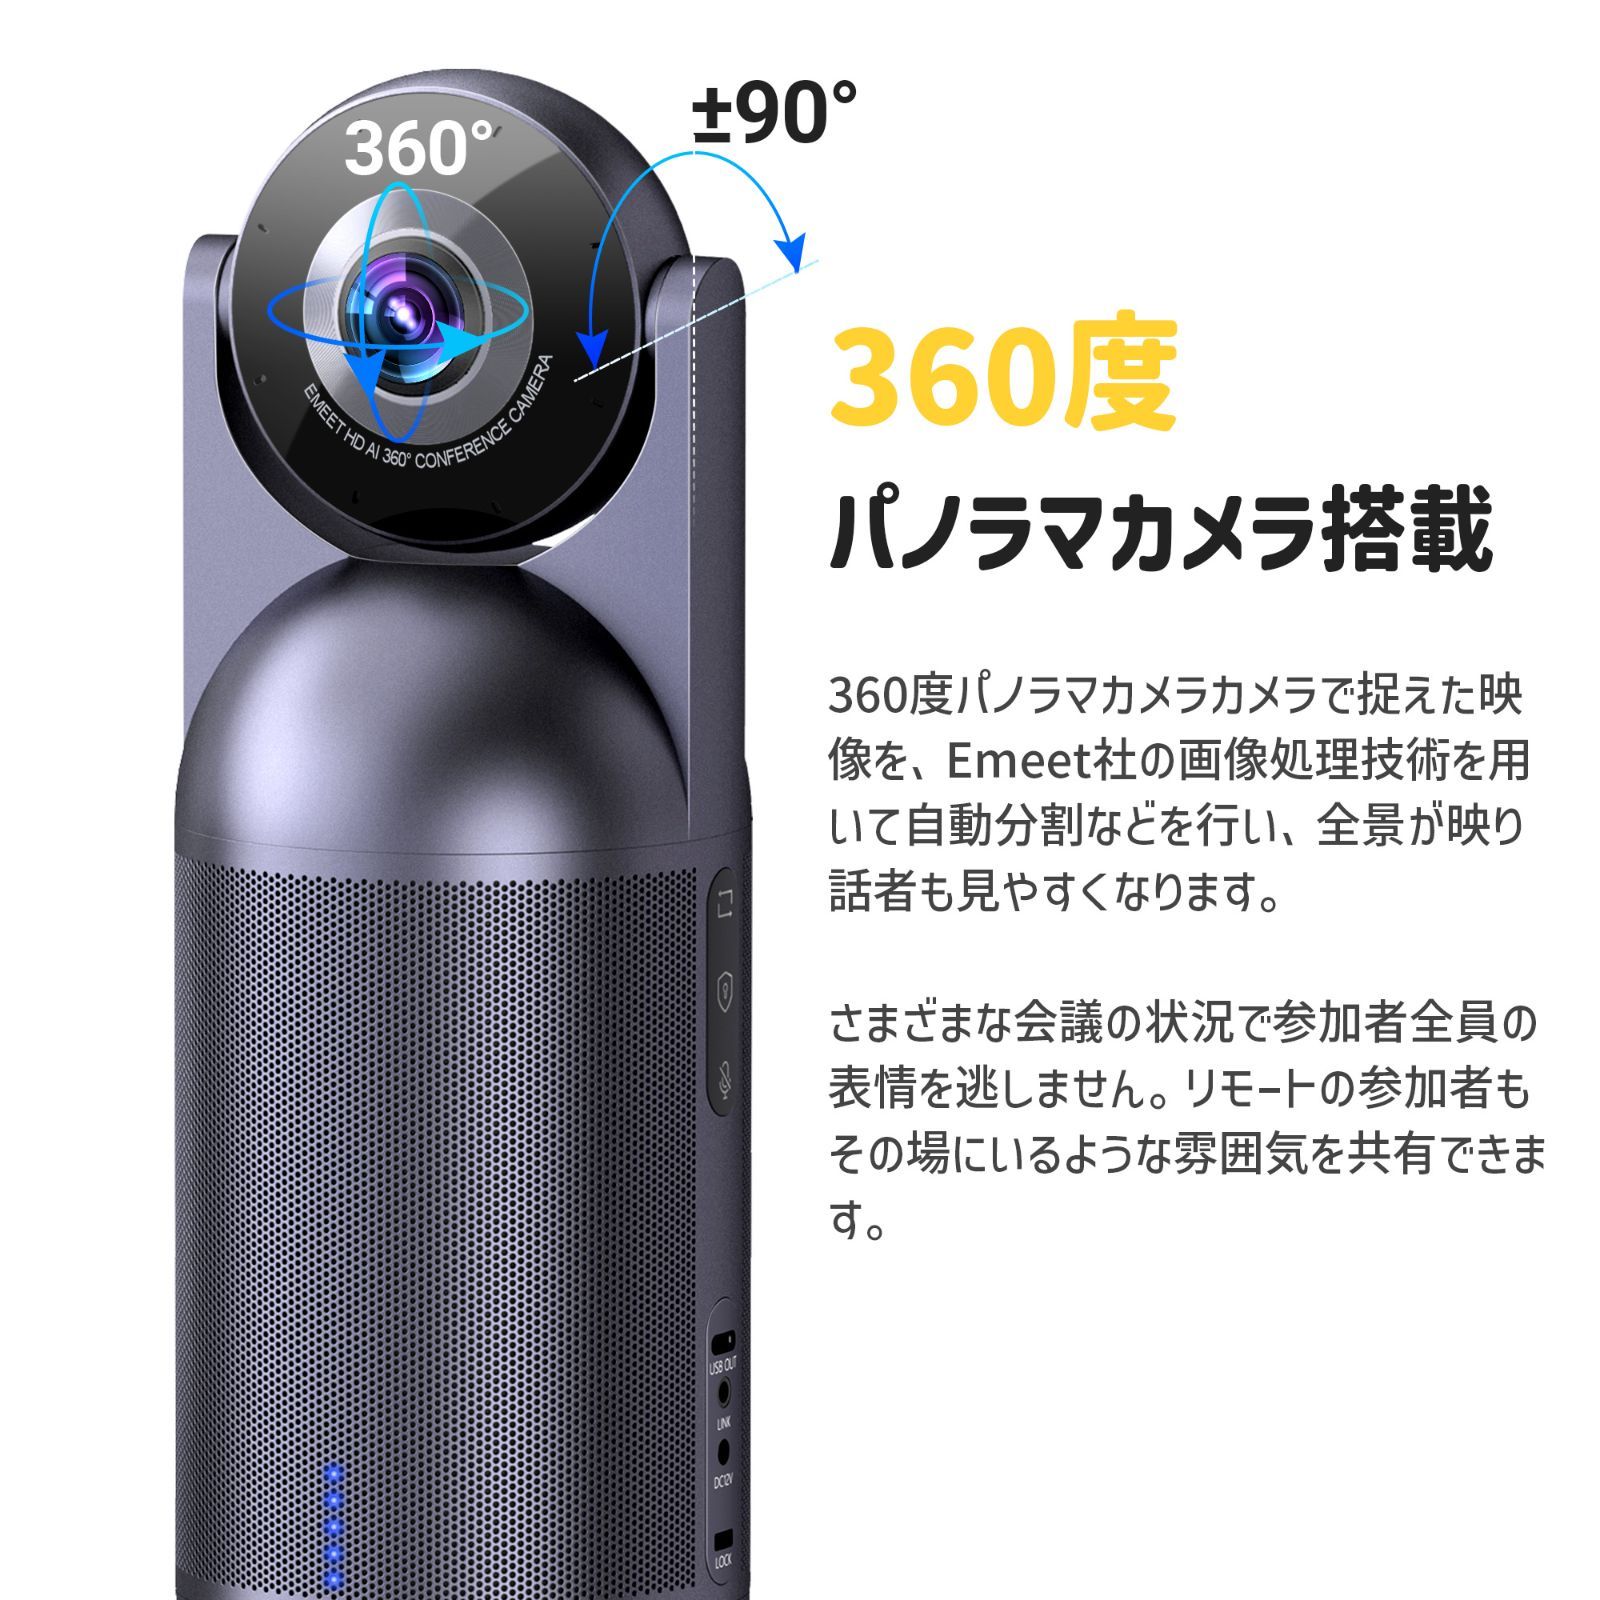 【日本正規販売店|2年保証|特典付き】 Emeet Meeting Capsule 360度パノラマ ウェブカメラ カプセル AIフォーカス 自動追跡 8つの全方向マイク 高音質スピーカー 5つの表示モード スピーカー内蔵 会議室用 Webカメラ イミート-3